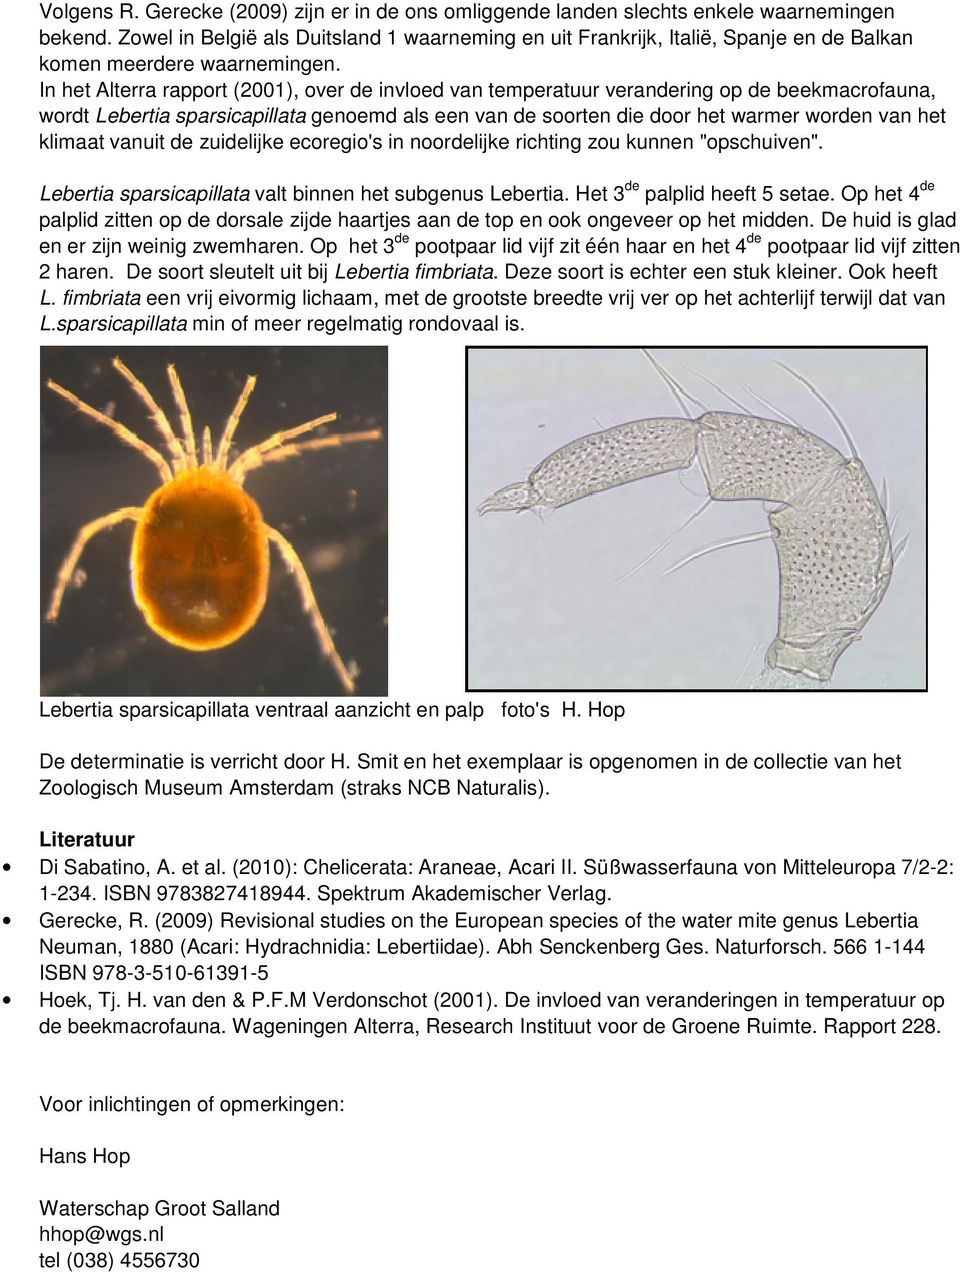 In het Alterra rapport (2001), over de invloed van temperatuur verandering op de beekmacrofauna, wordt Lebertia sparsicapillata genoemd als een van de soorten die door het warmer worden van het